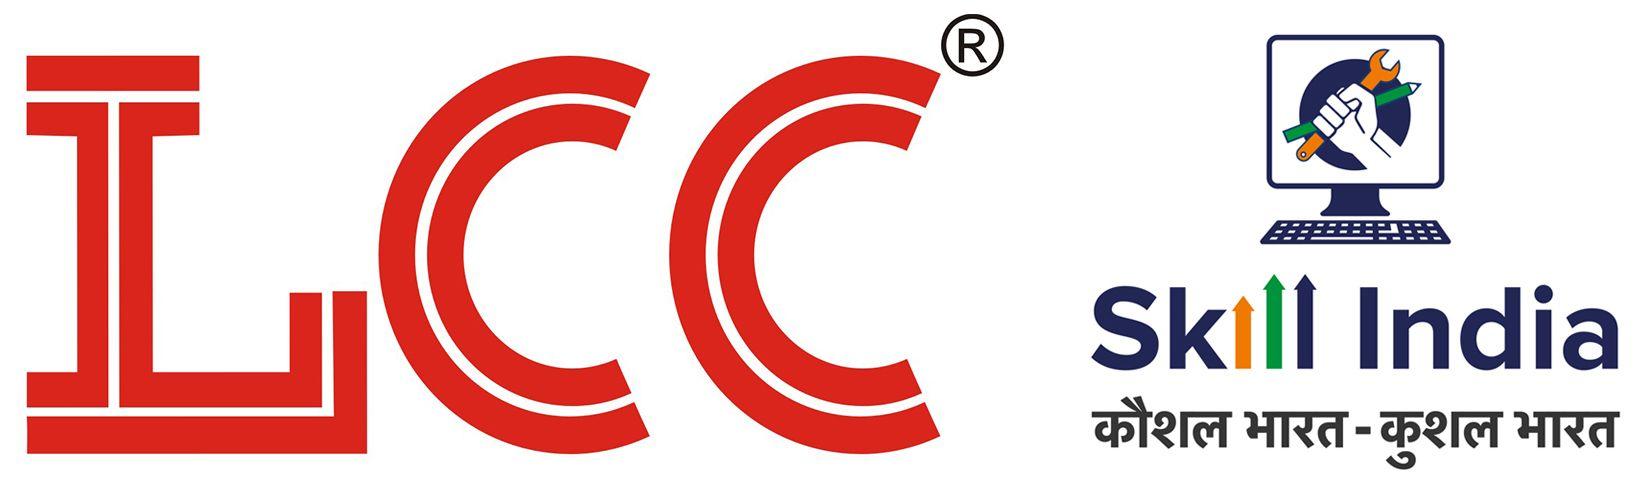 LCC Logo - LCC Infotech